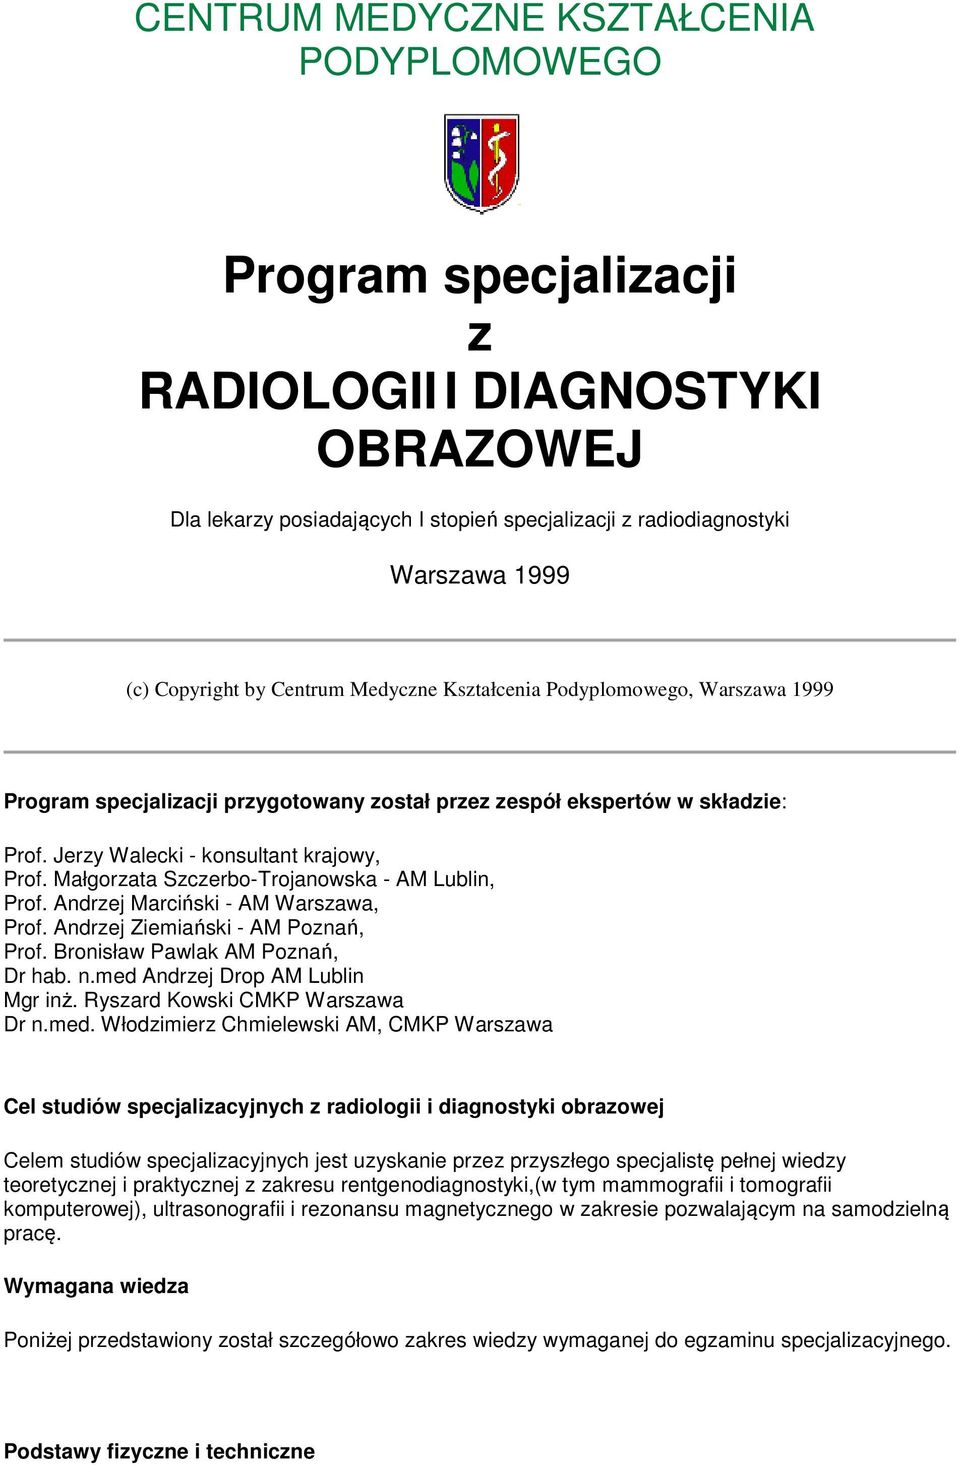 Małgorzata Szczerbo-Trojanowska - AM Lublin, Prof. Andrzej Marciński - AM Warszawa, Prof. Andrzej Ziemiański - AM Poznań, Prof. Bronisław Pawlak AM Poznań, Dr hab. n.